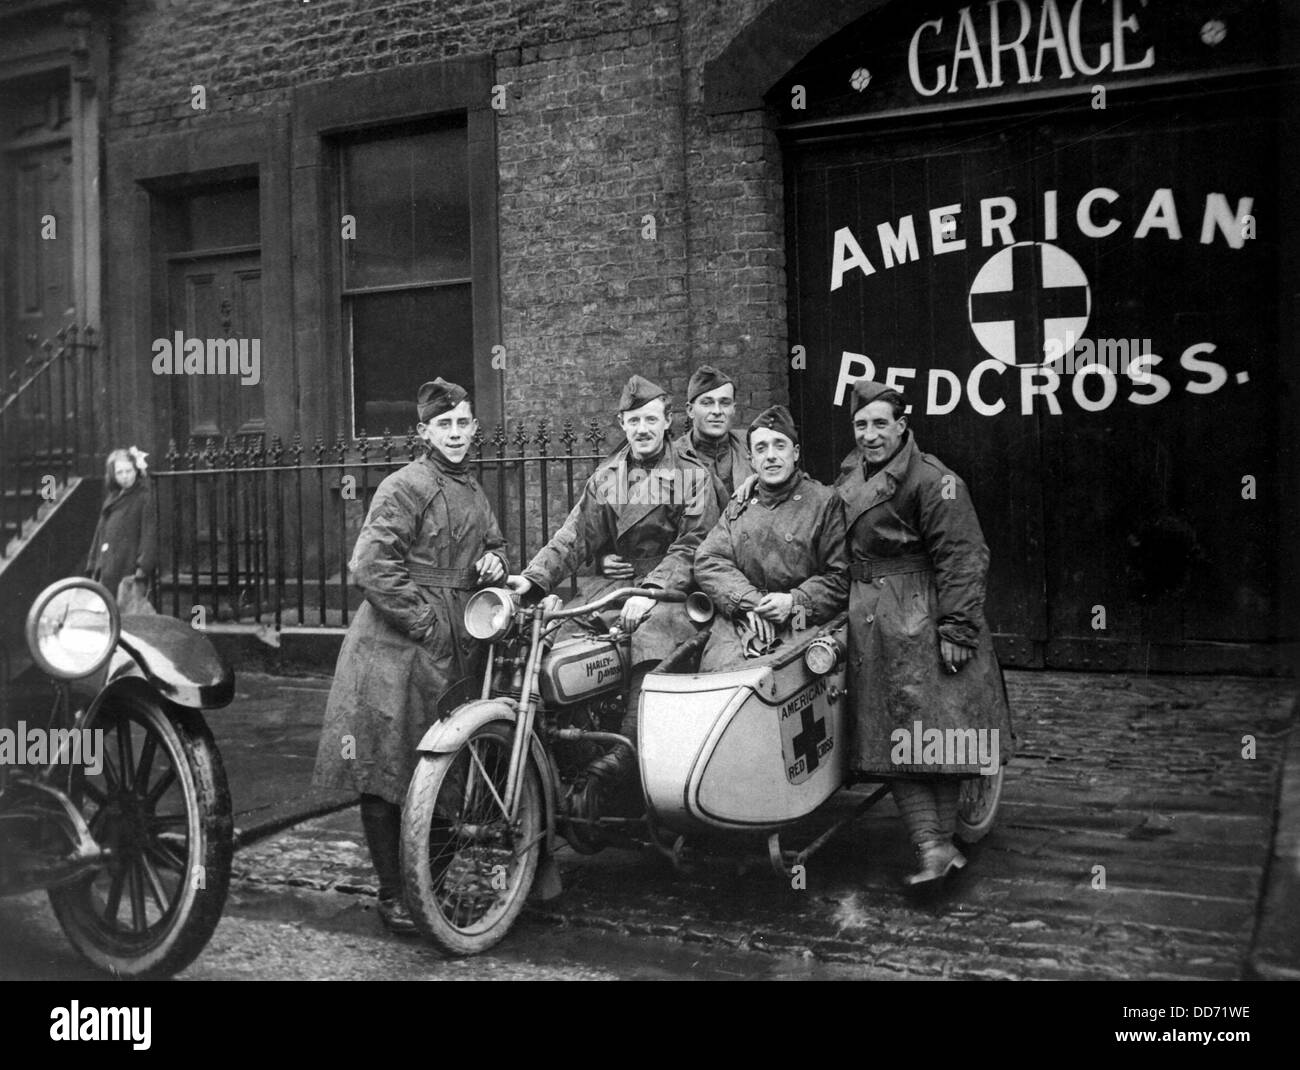 American Red Cross Einsatzkräfte ihre Harley Davidson Motorrad mit Beiwagen in Großbritannien. Weltkrieg ca. 1918. Stockfoto